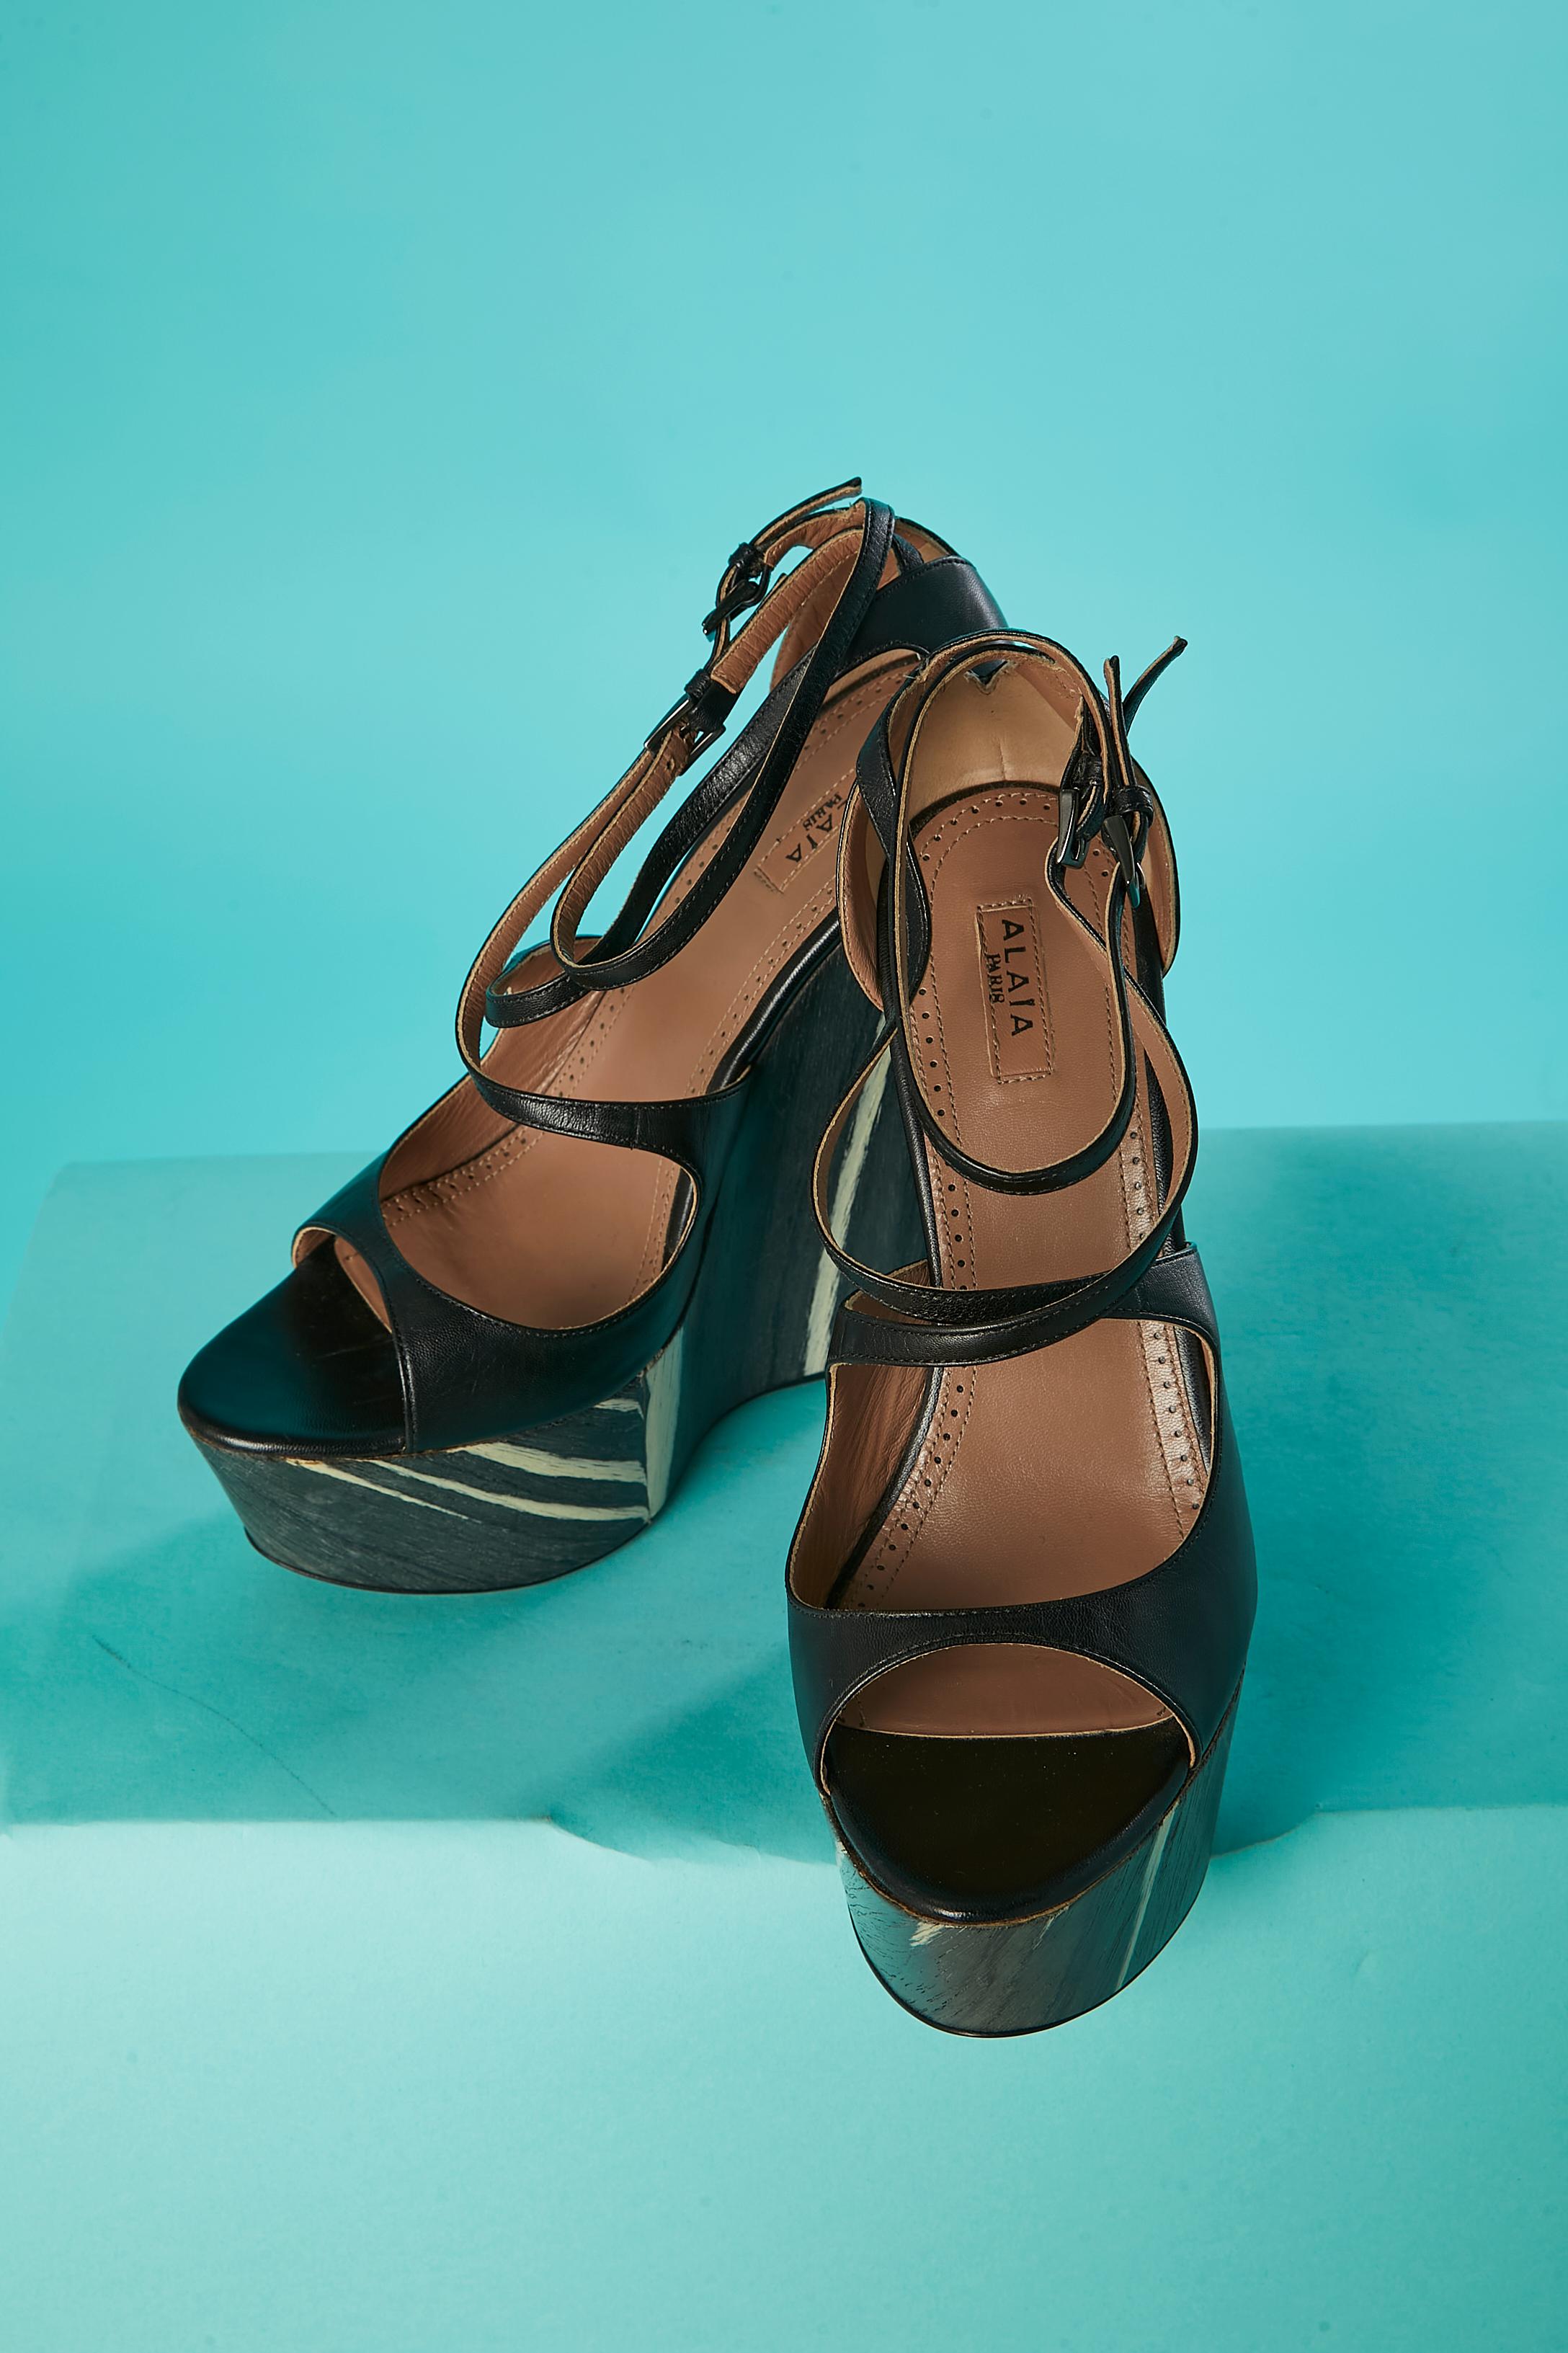 Plateform sandal in black leather and wood pattern heels Alaïa  For Sale 1